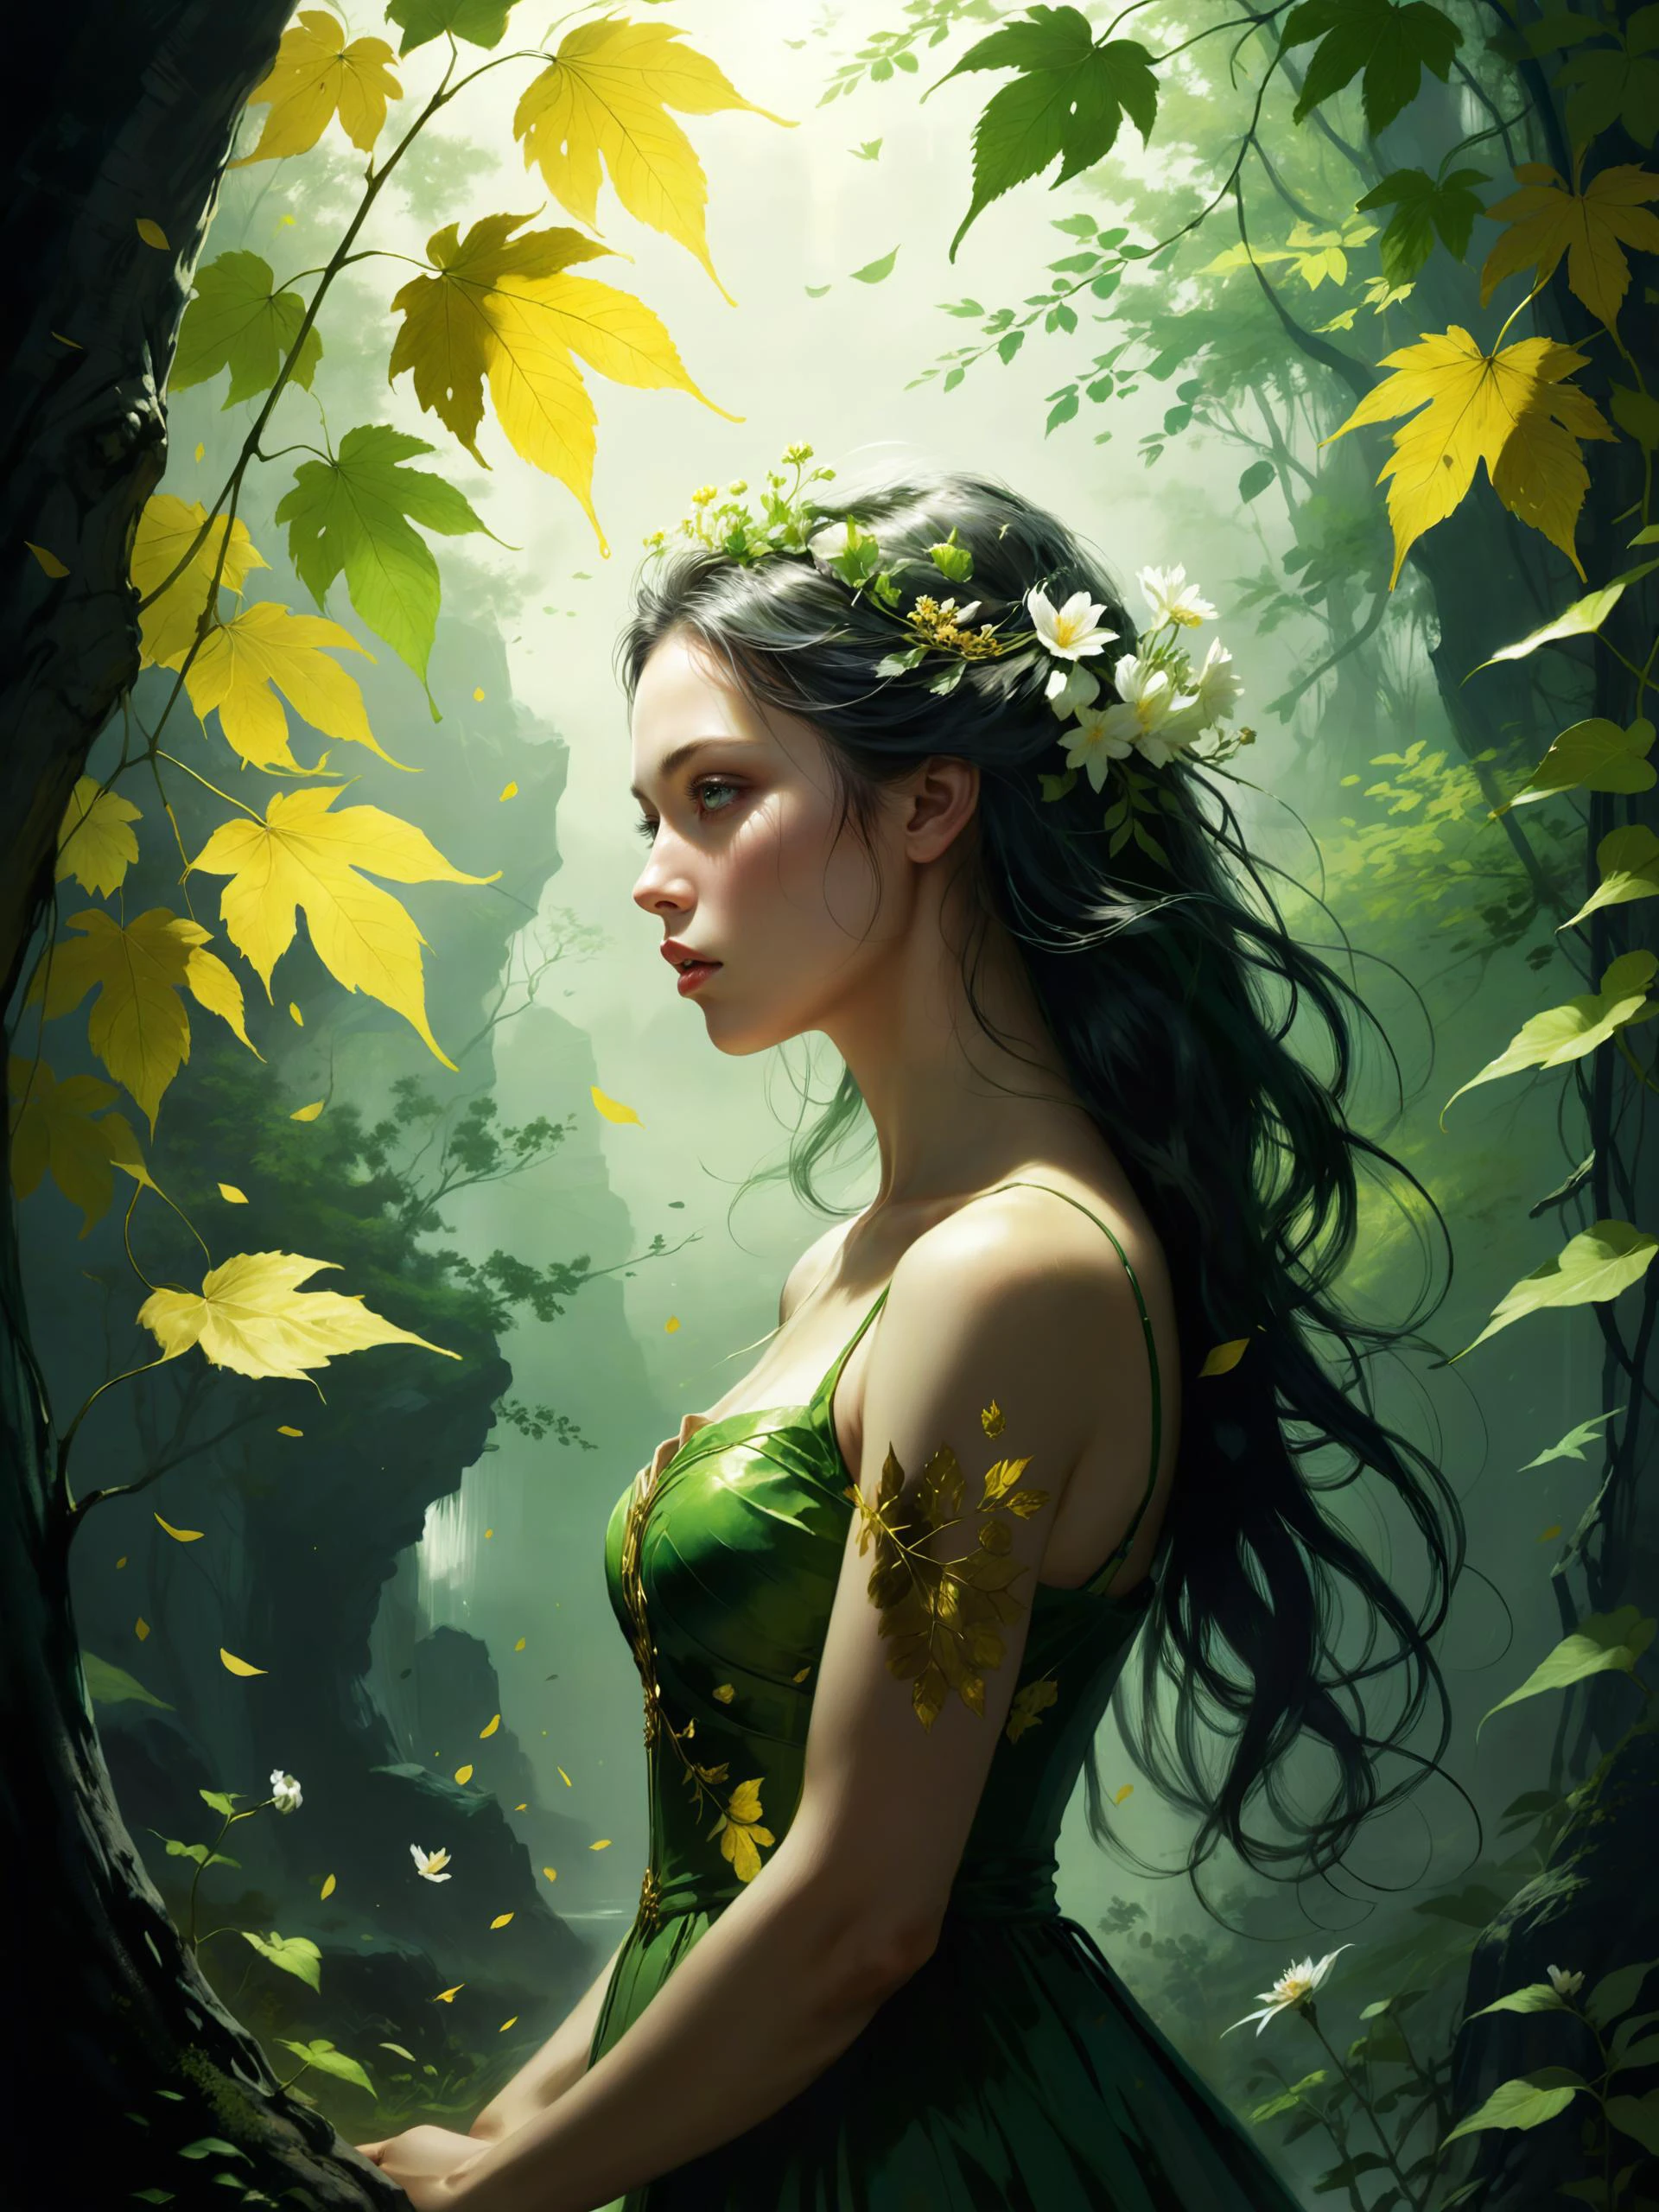 大自然的第一個綠色是金色, 她最难保持的色调, 她早期的葉子是一朵花, 但只有一个小时, 然後葉子退化為葉子, 于是伊甸园陷入悲痛之中, 所以黎明變成了白天, 沒有什麼金子可以留下來, 斑駁的光, 著名艺术作品 (約翰·克里斯蒂安·達爾:1.4) 和 (李珉載:1.4)